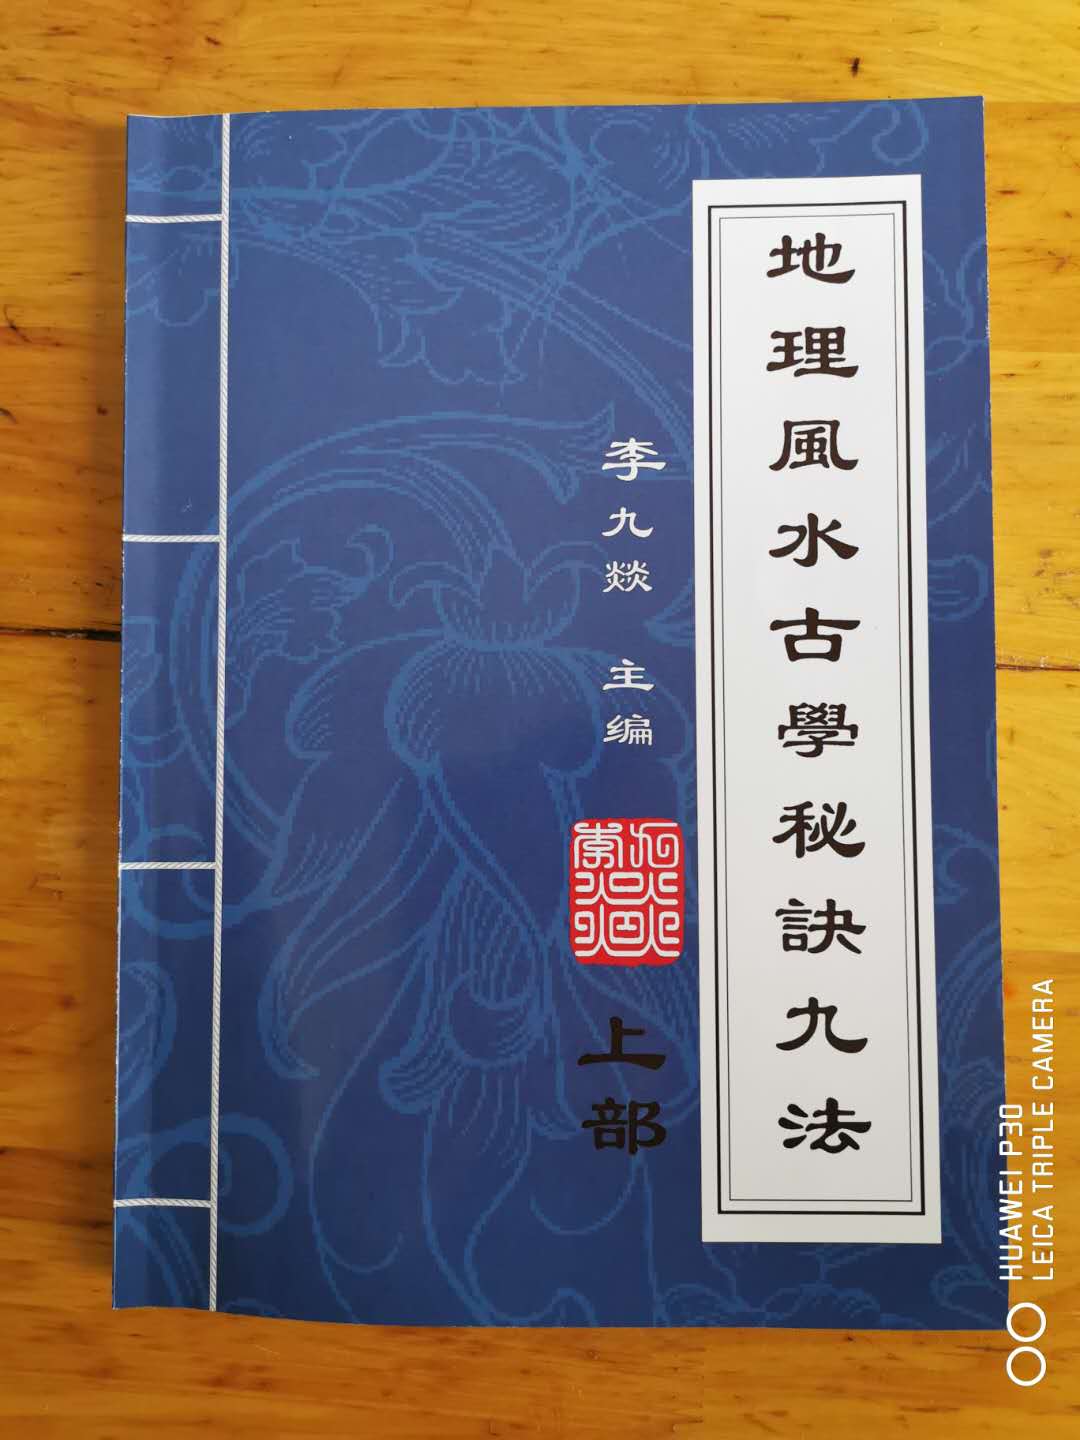 重庆风水师李九燚风水著作《地理风水古学秘诀九法》